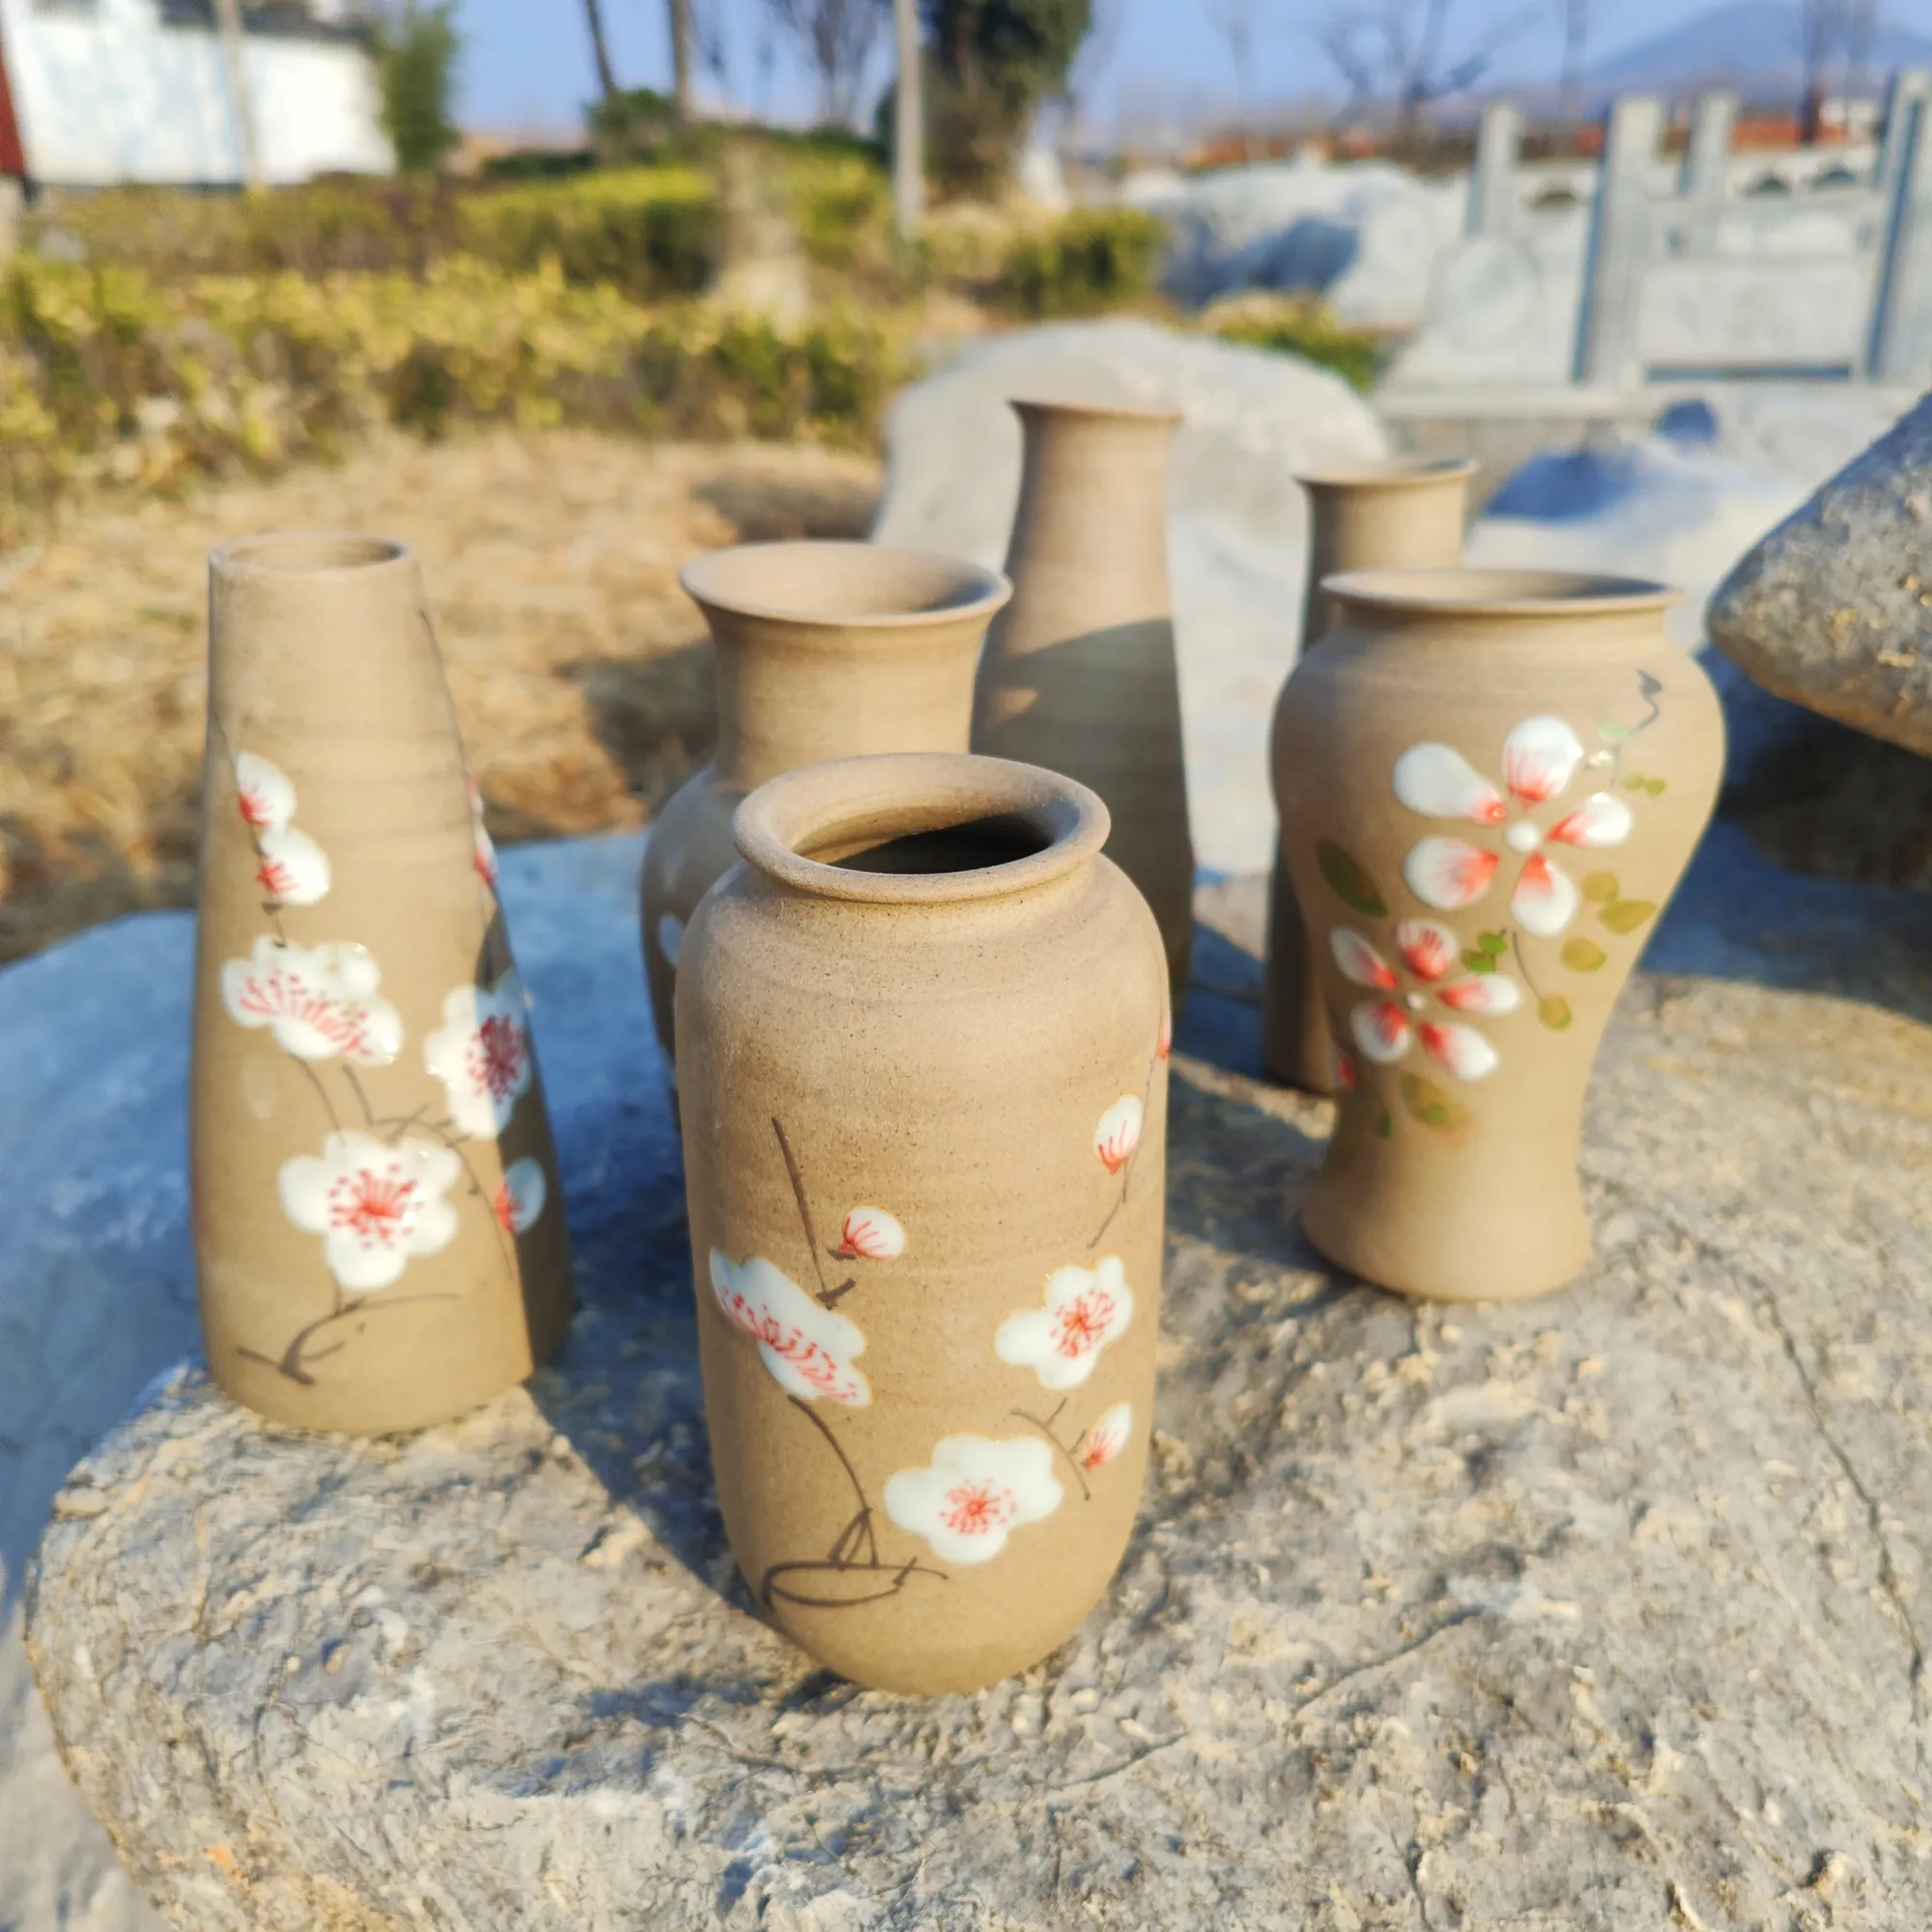 Pot bunga sukulen, Pot keramik tanah liat bulat unik elegan, Pot bunga sukulen keramik